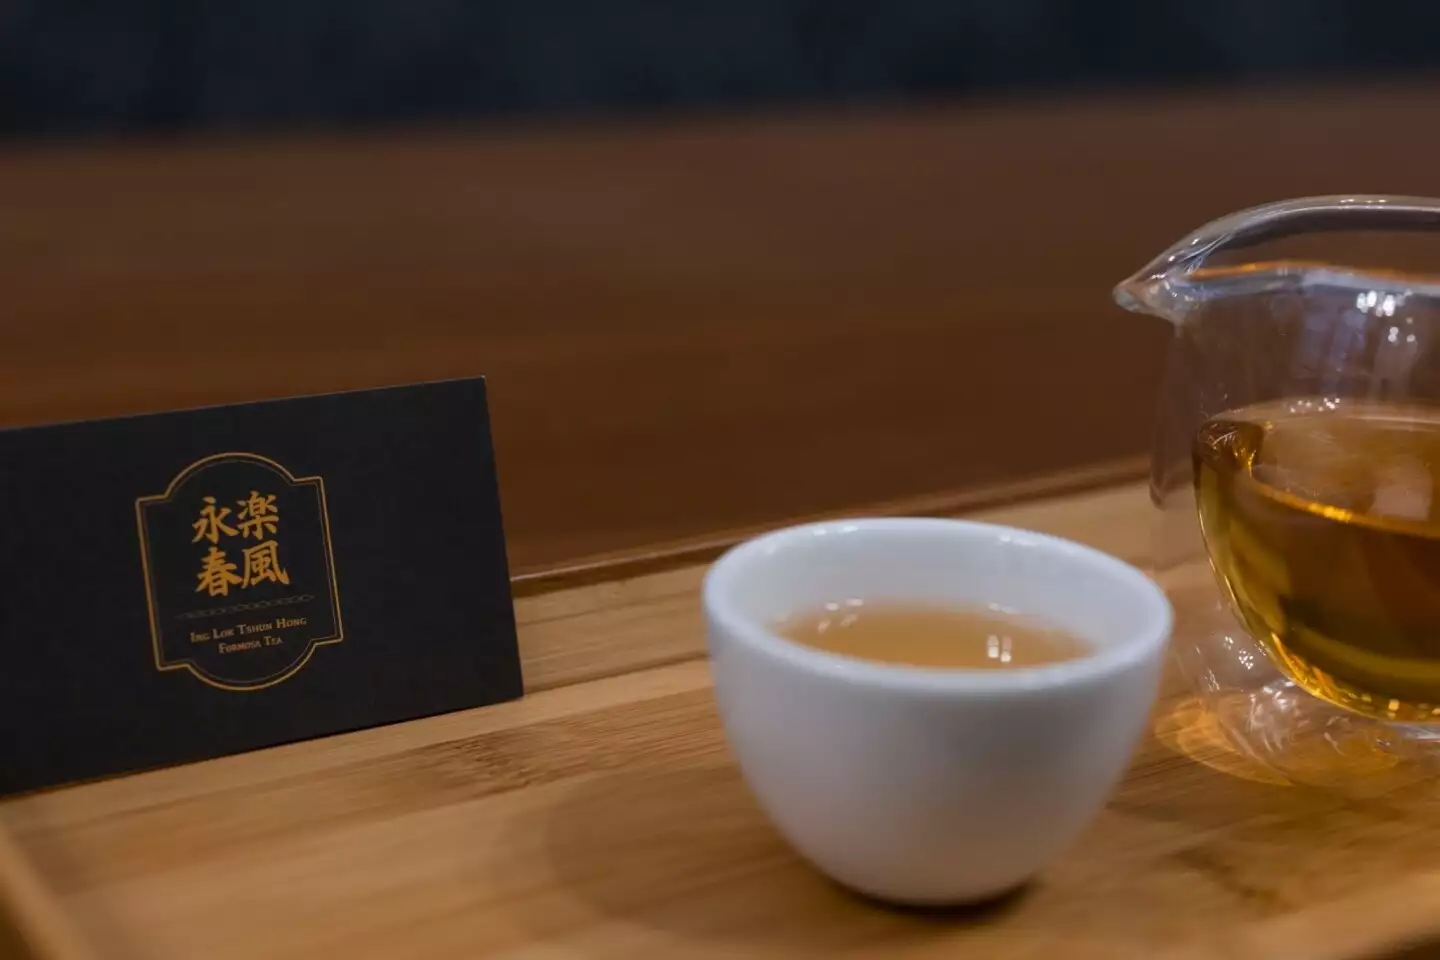 來永樂春風茶館除了品茶識茶，也能購茶回家獨自享有與茶對談的悠閒，或是和親朋好友一起分享屬於你們的論茶時光。圖片來源：永樂春風茶館 Ing Lok Tshun Hong Formosa Tea。